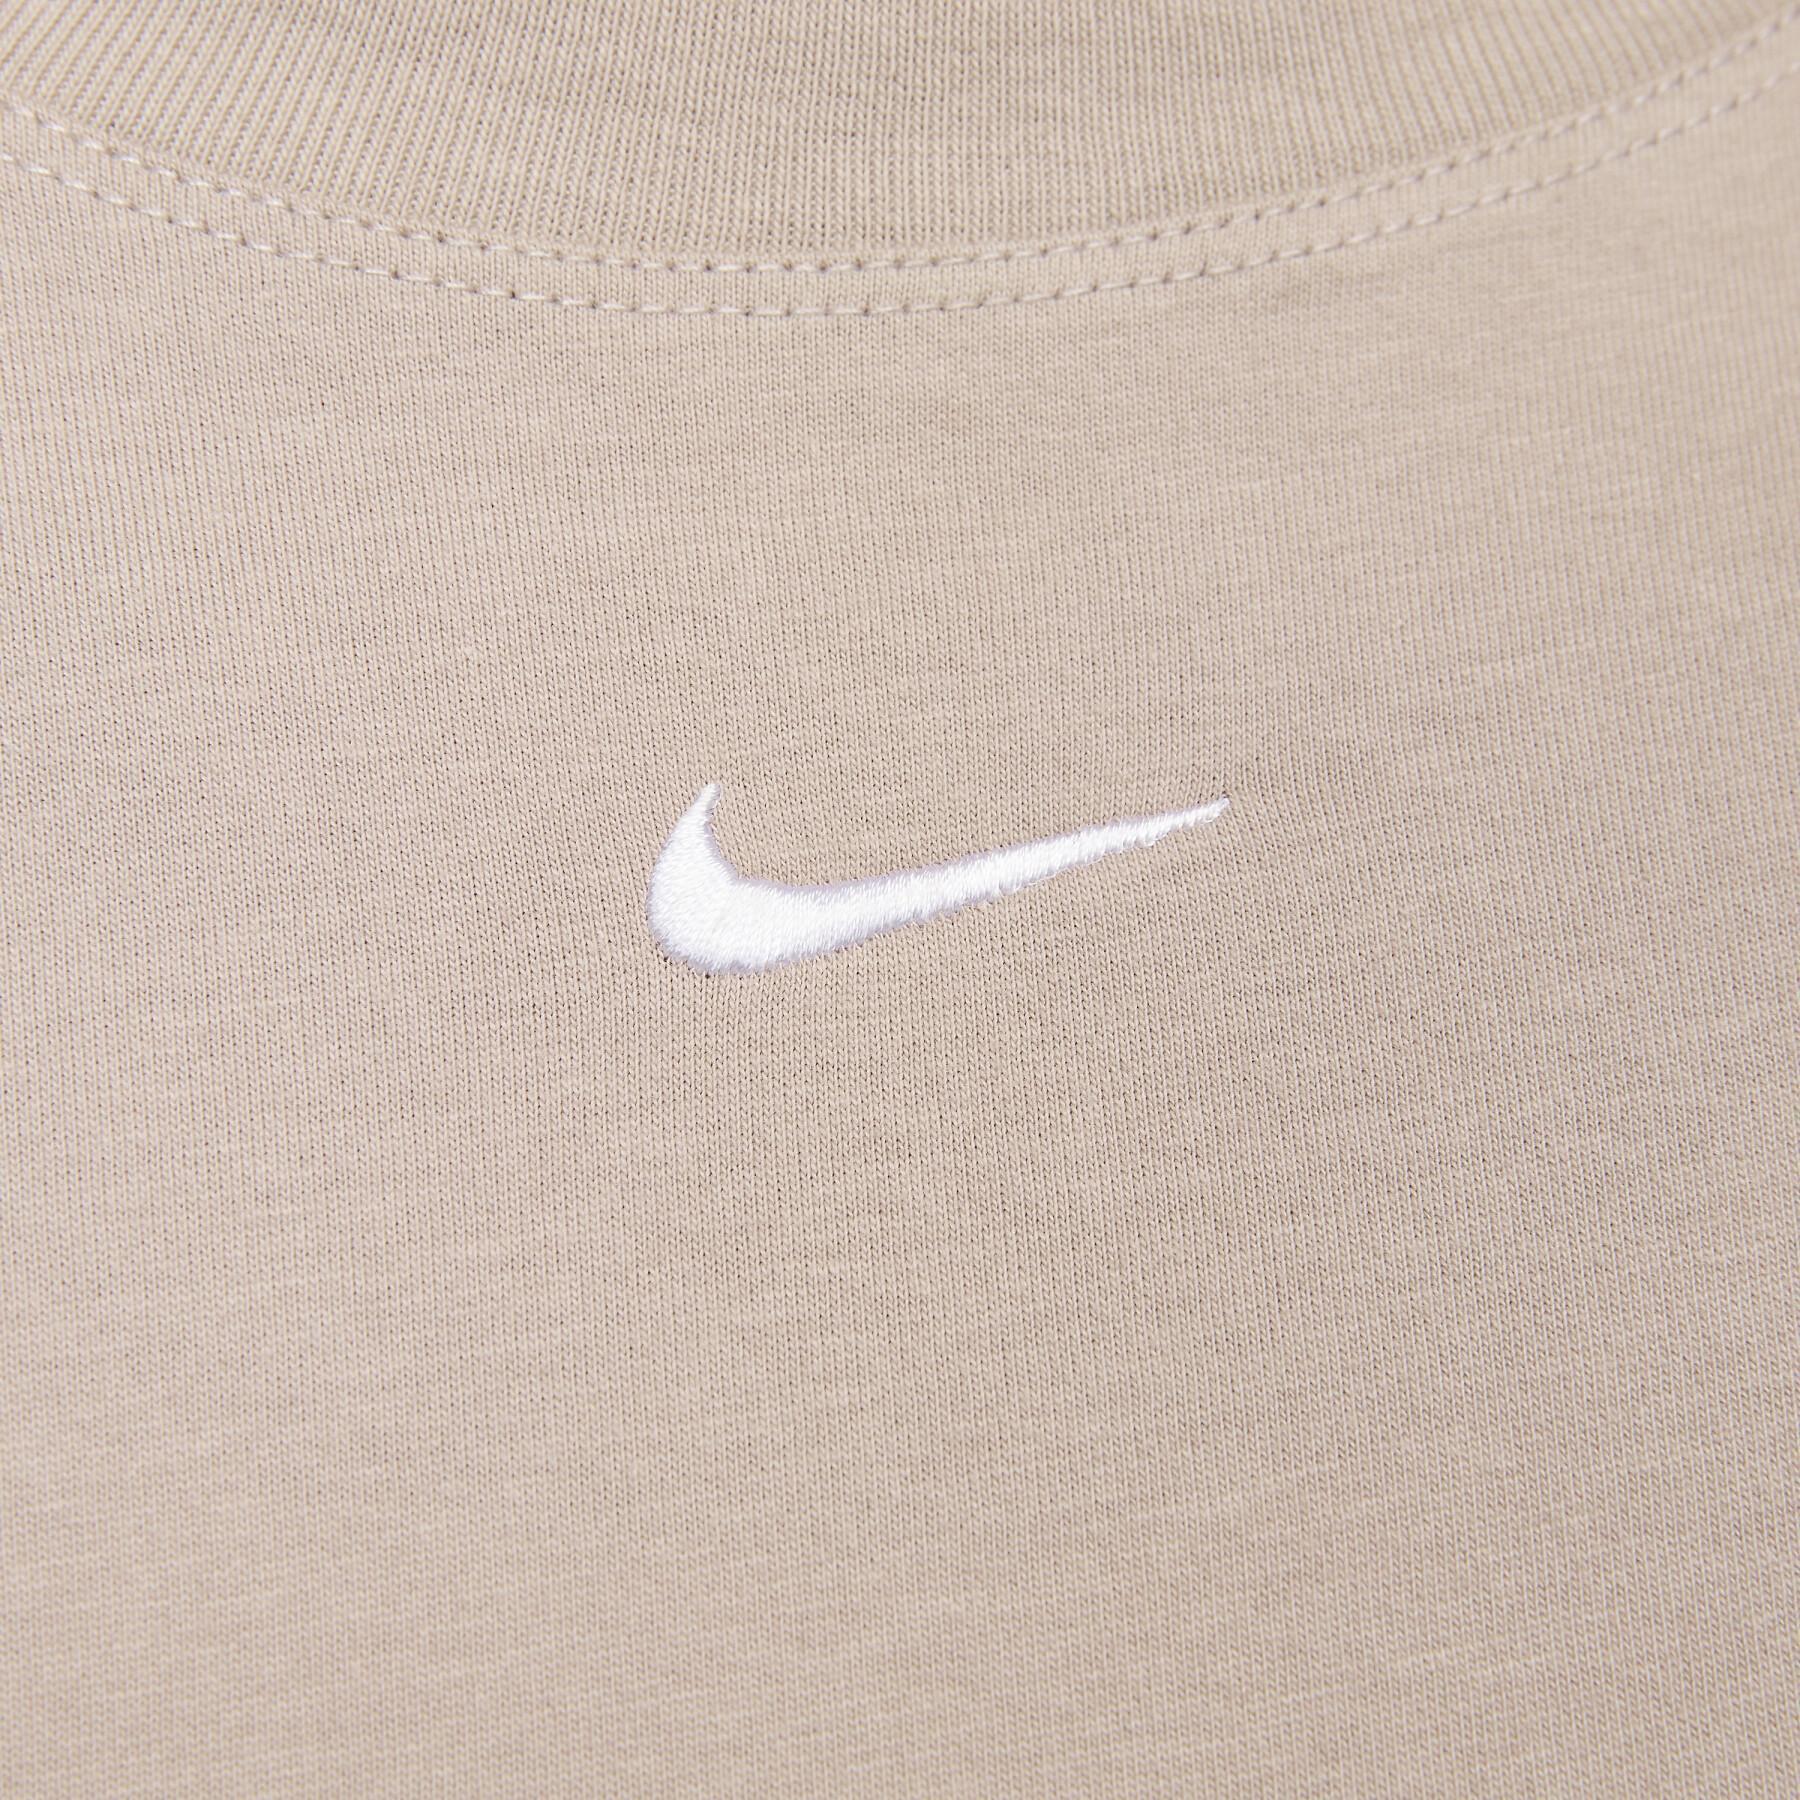 T-shirt femme Nike Essential